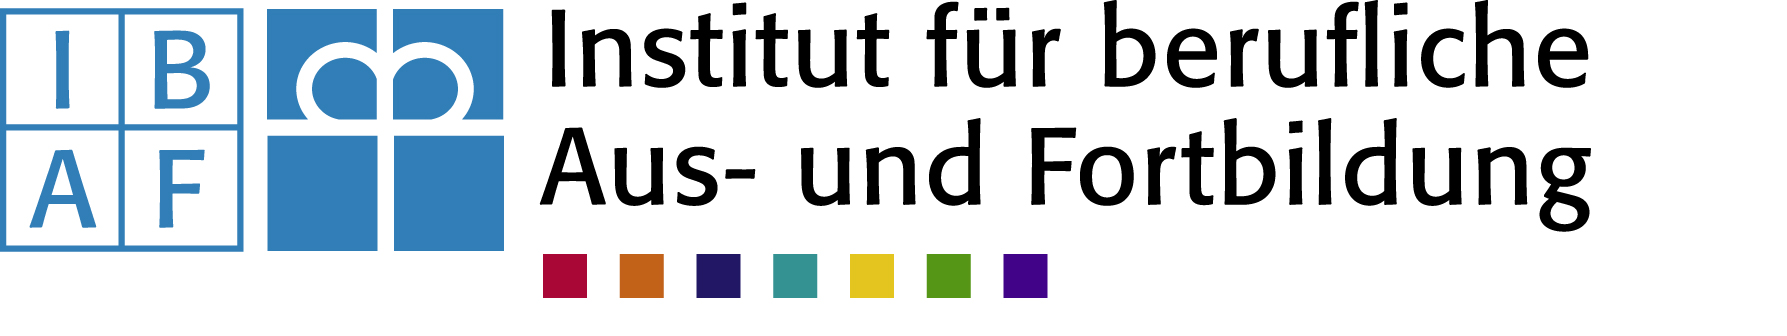 Logo_IBAF_2008_quer_ farbig